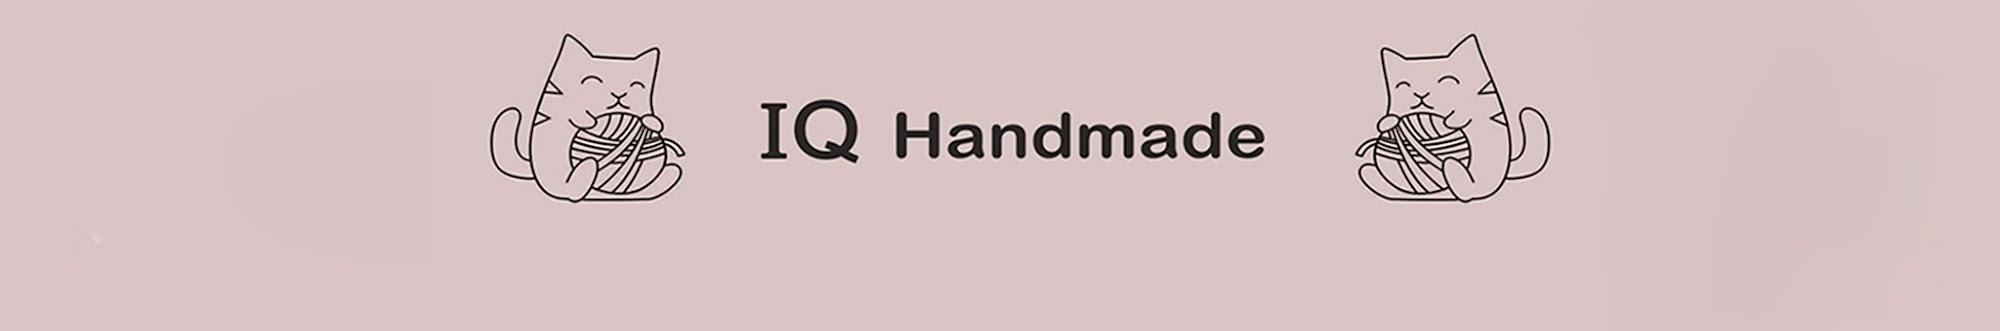 IQ_Handmade